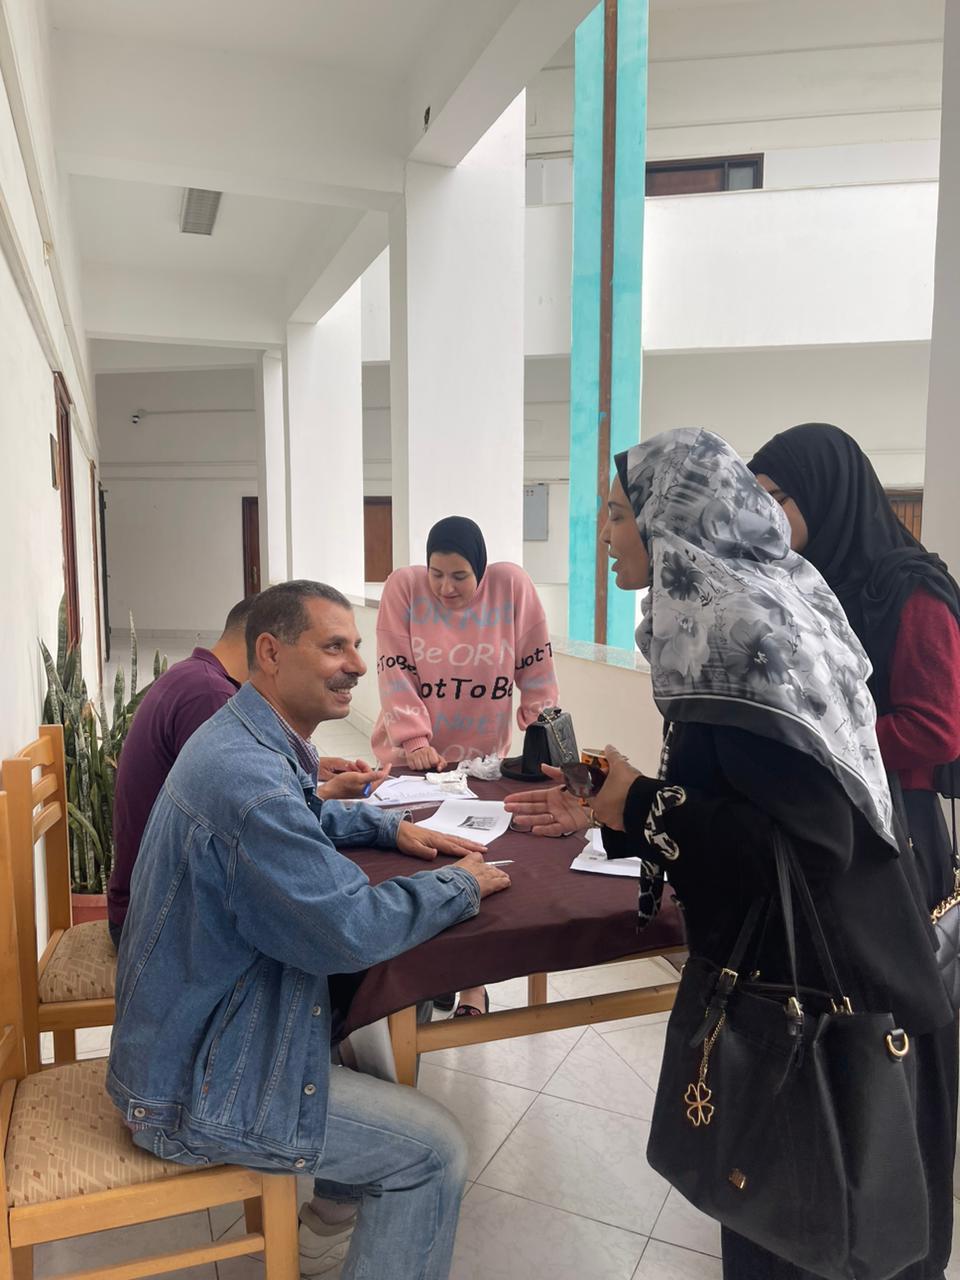 سحب إستمارات الترشيح لإنتخابات إتحاد طلاب جامعة الاسماعيلية الجديدة الأهلية 